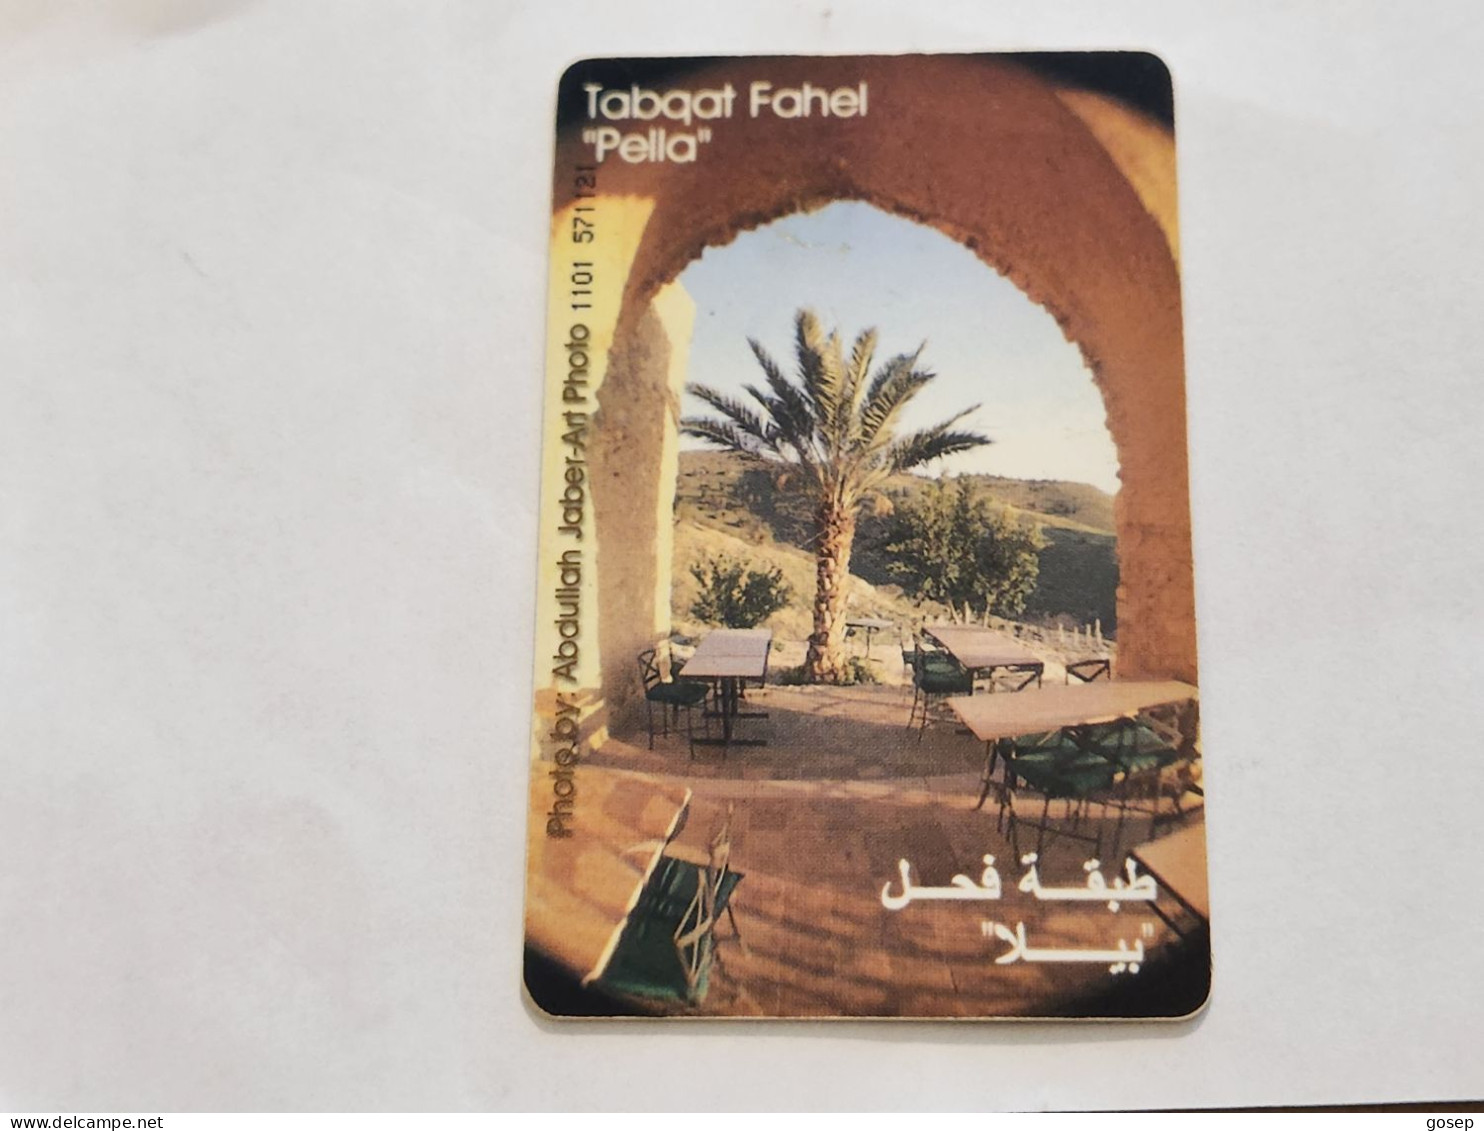 JORDAN-(JO-ALO-0067)-Tabqat Fahel "Pella-(185)-(1101-571121)-(3JD)-(01/2001)-used Card+1card Prepiad Free - Jordanien